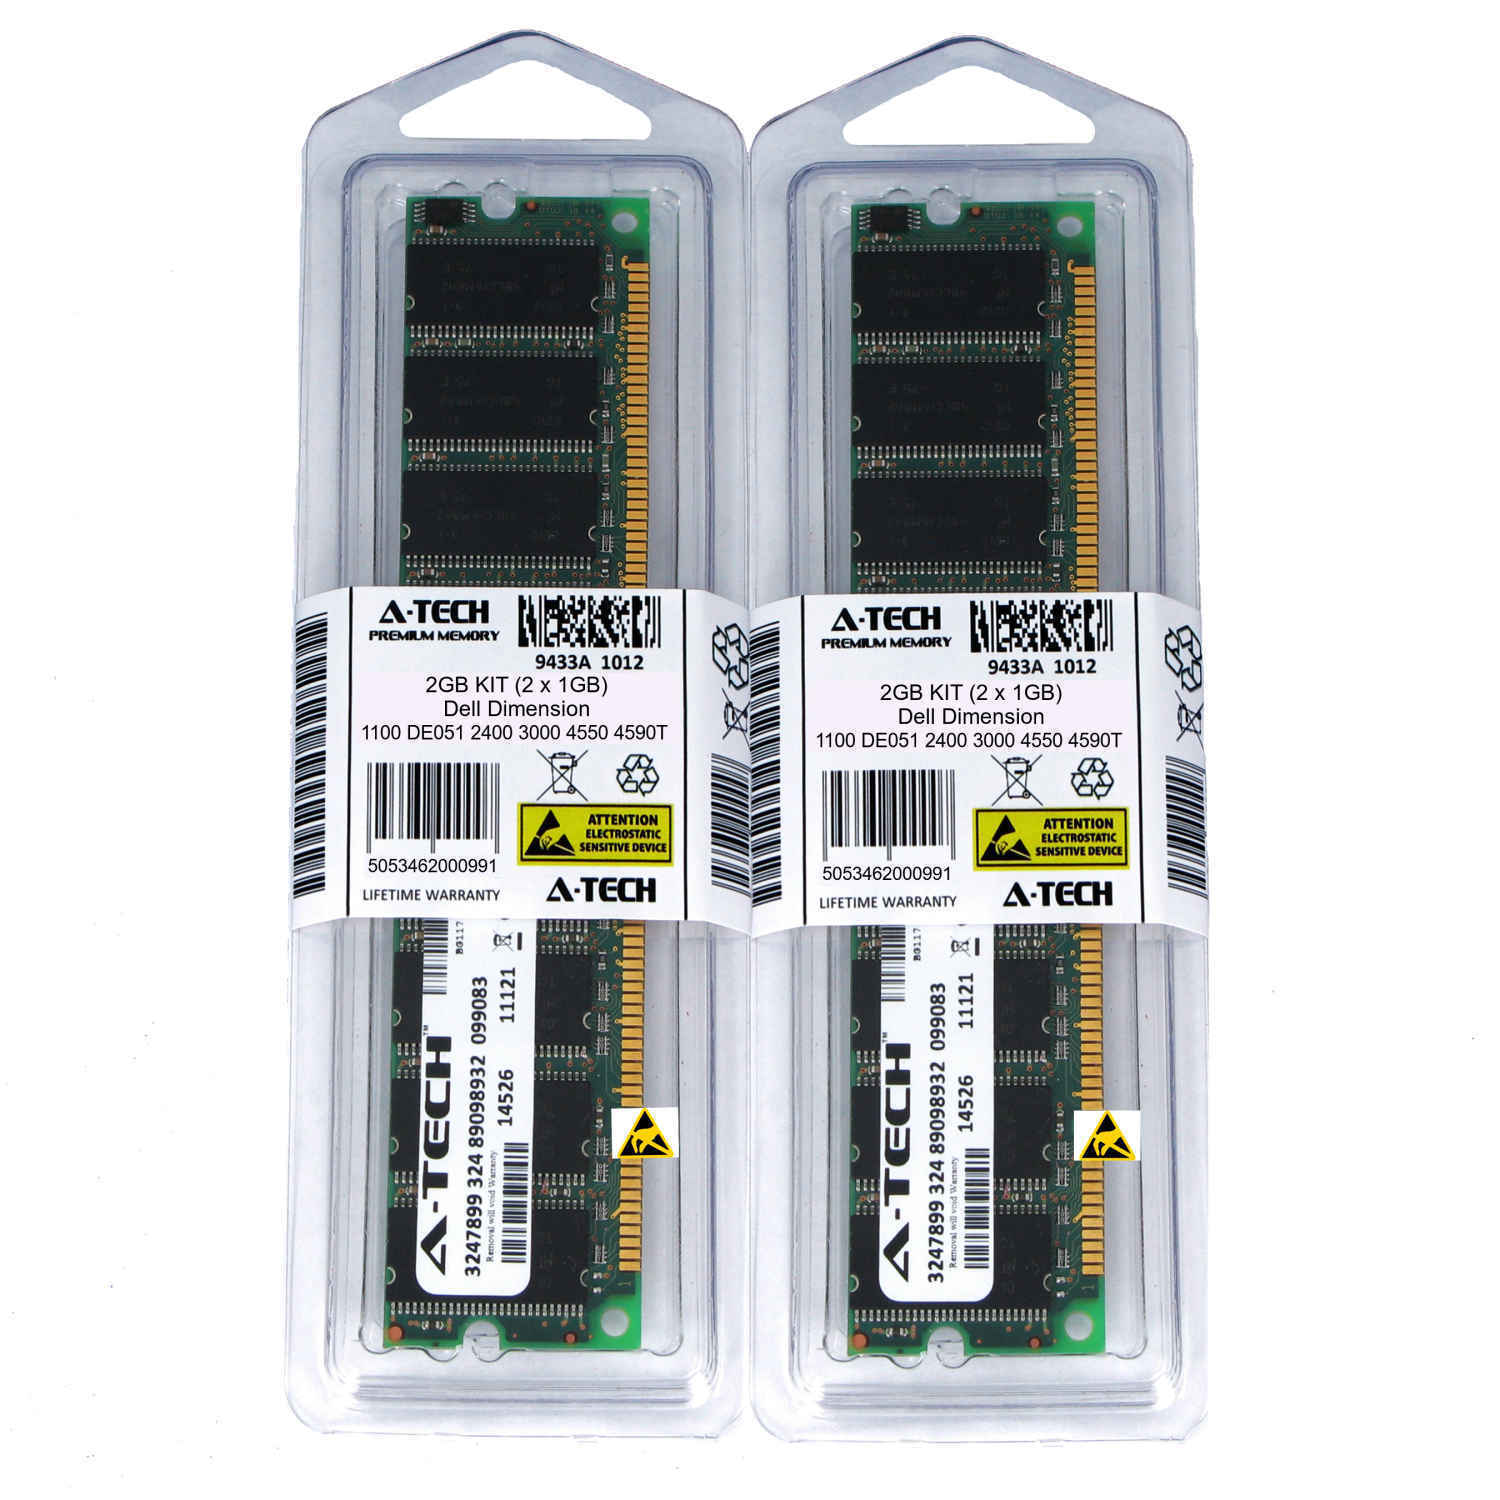 2GB Kit (2 x 1GB) for DELL DIMENSION 1100 DE051 2400 3000 4550 4590T Memory RAM